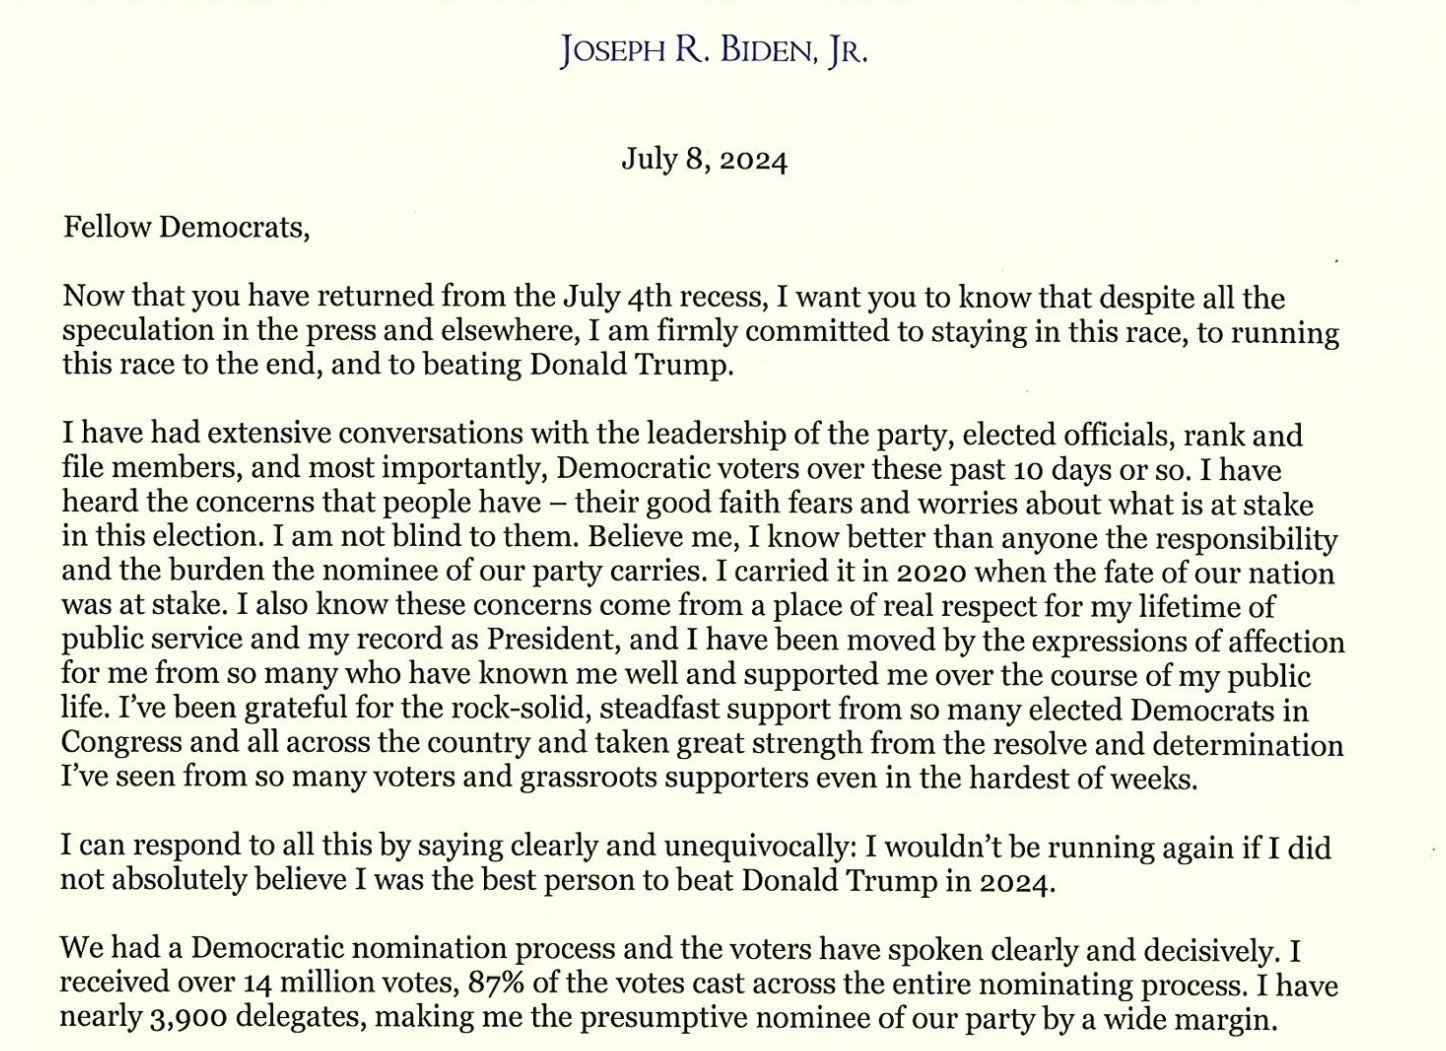 Biden Letter.JPG